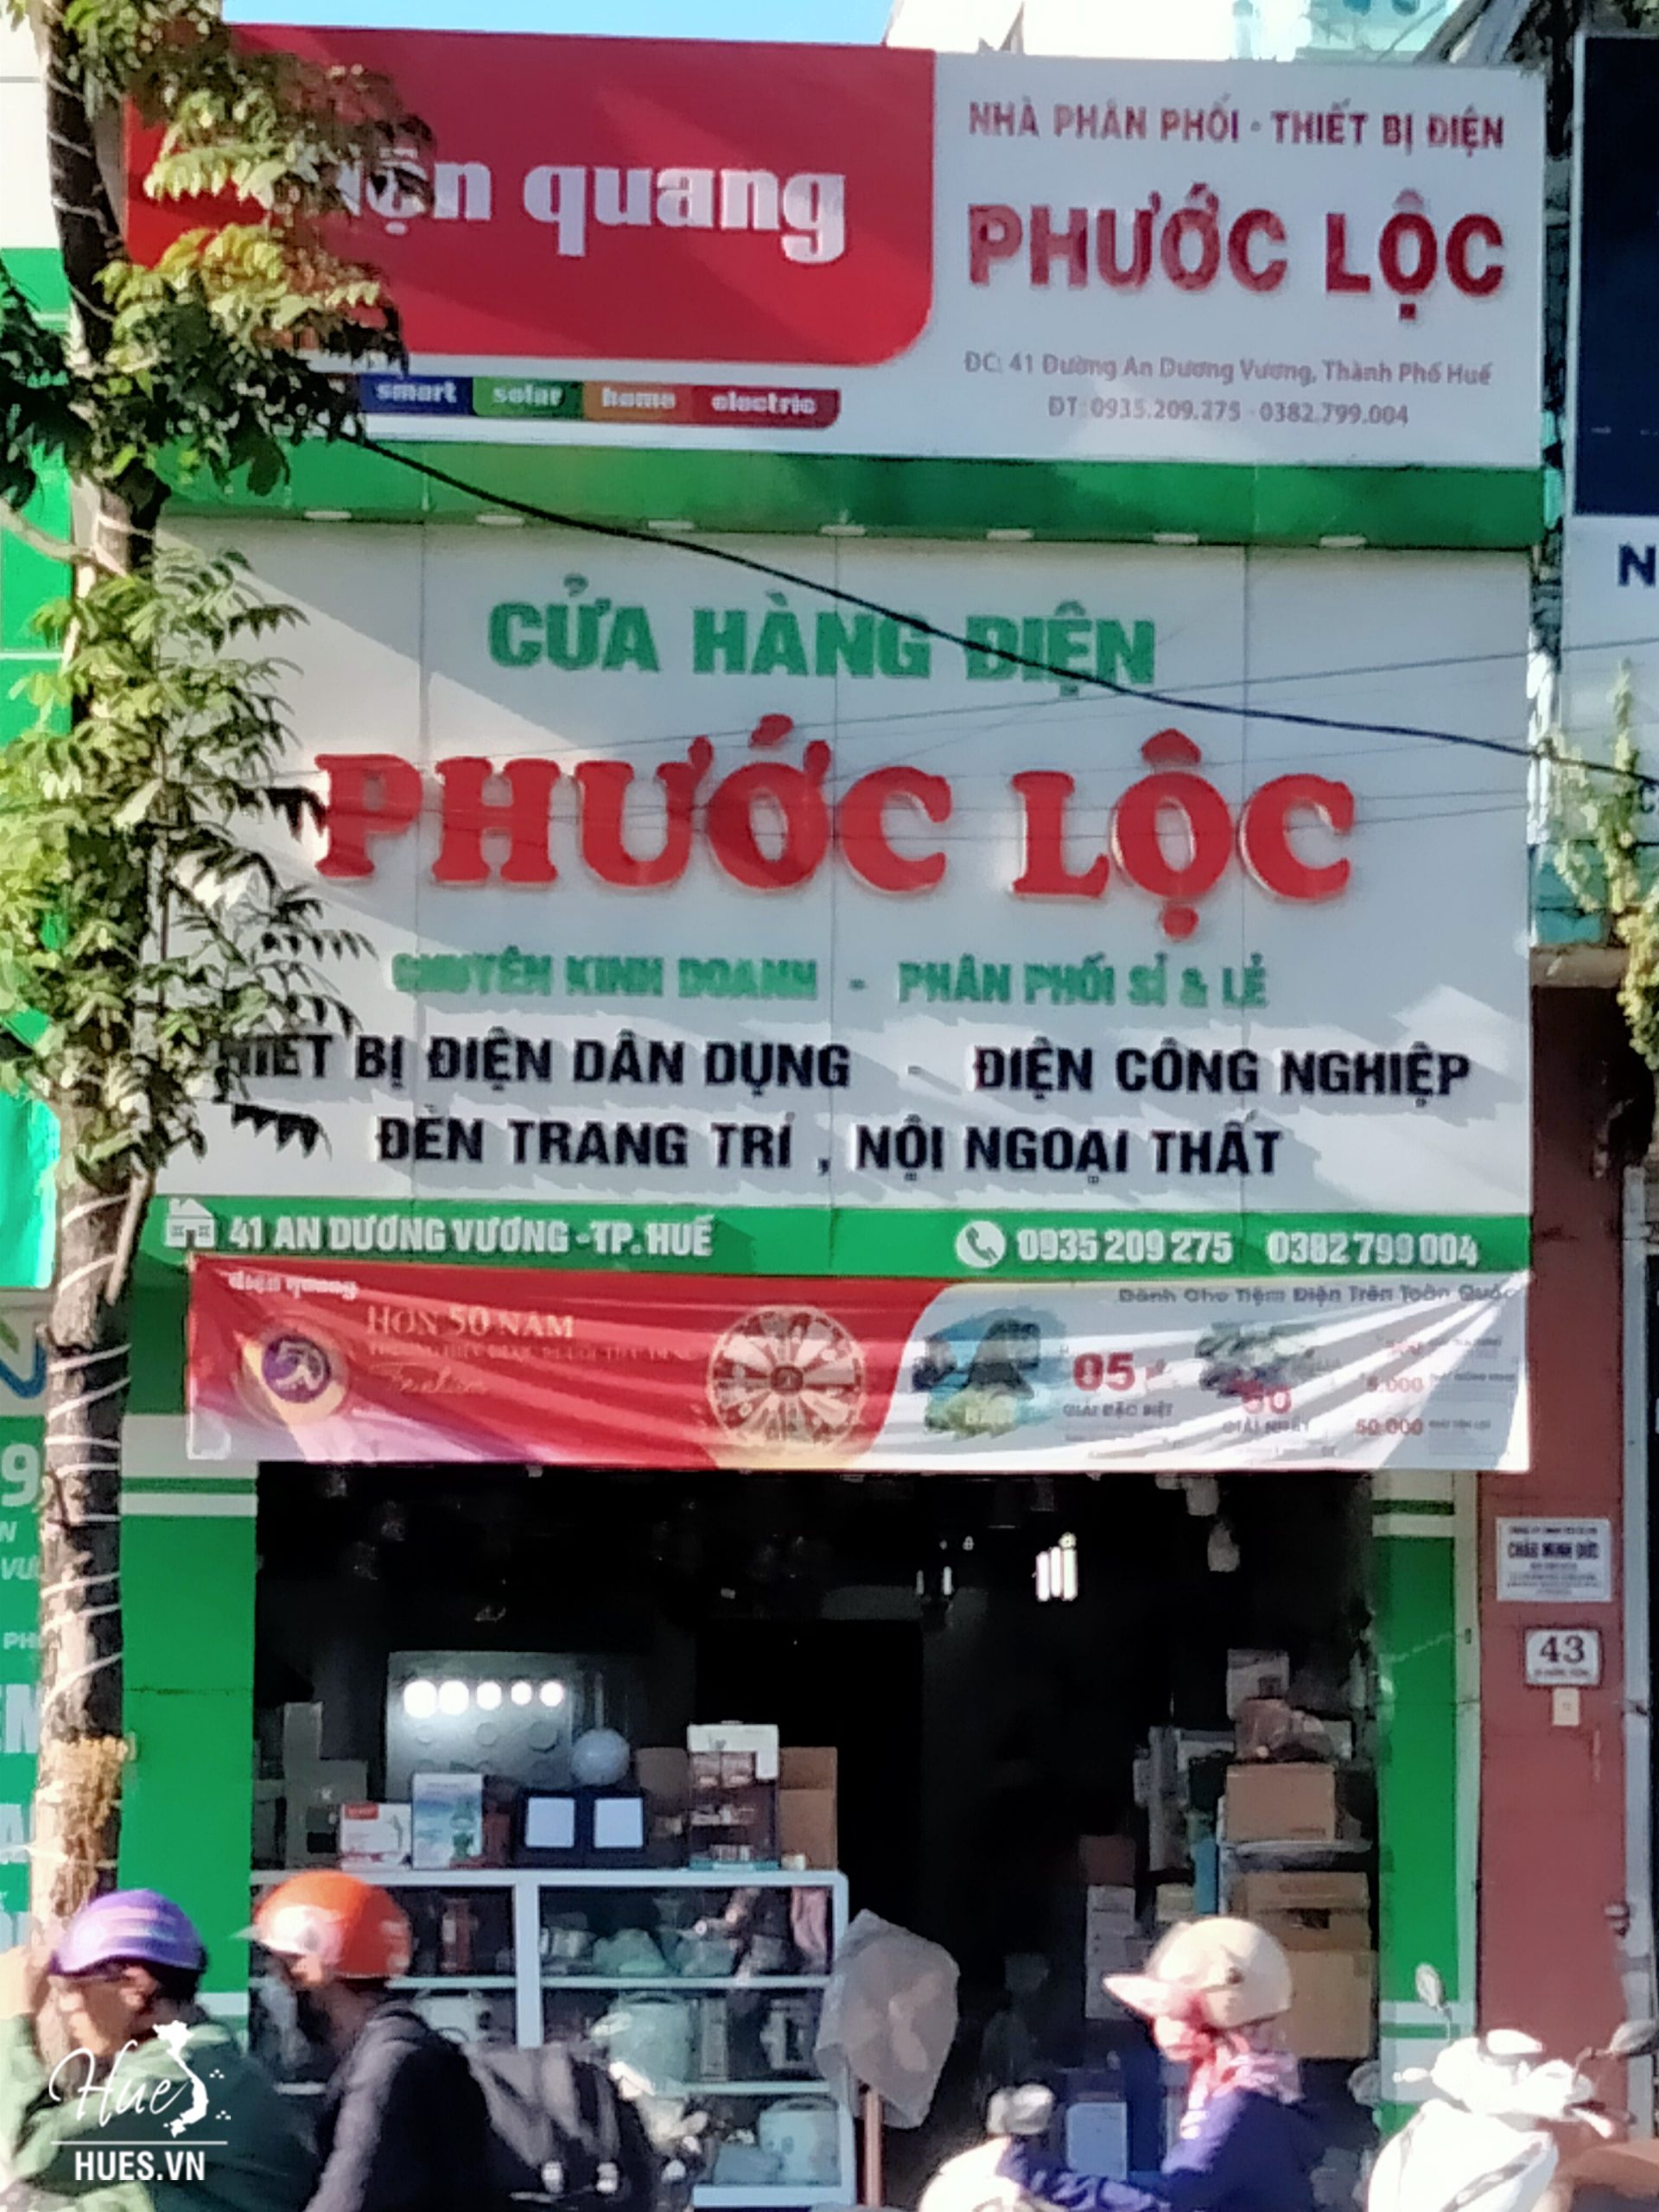 Cửa hàng điện Phước Lộc